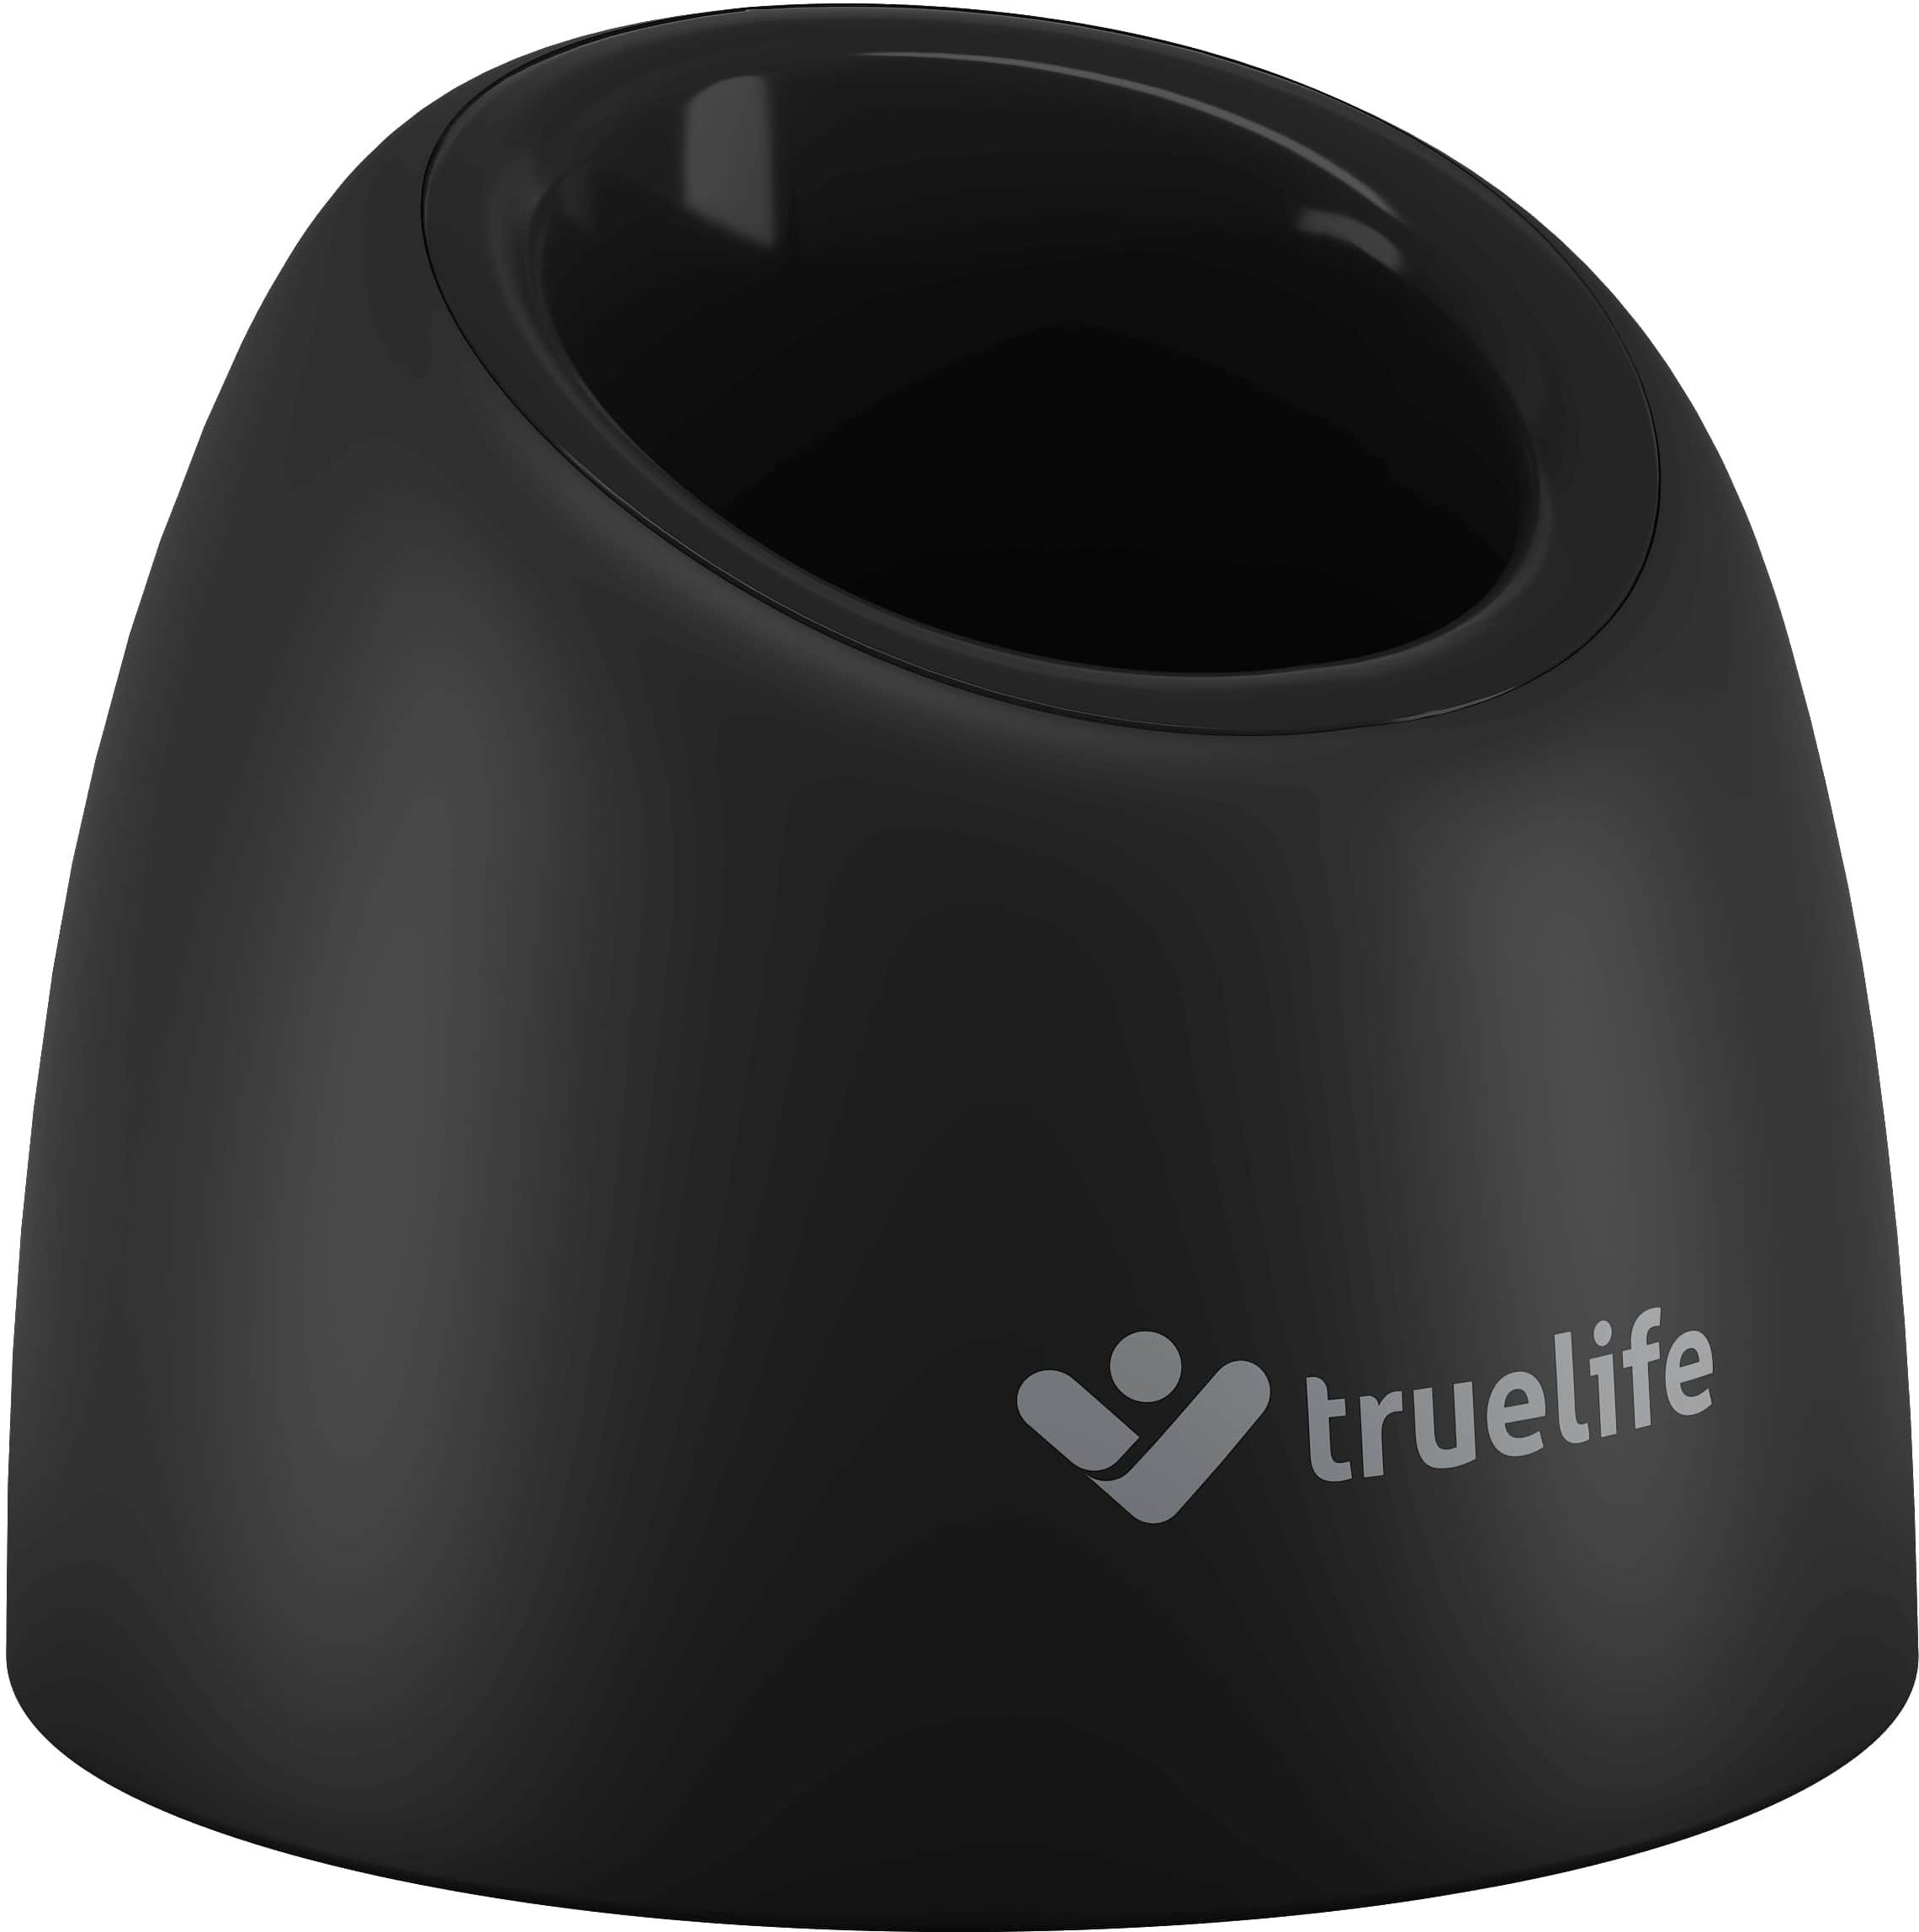 Töltőállvány TrueLife SonicBrush kompakt töltőalap fekete